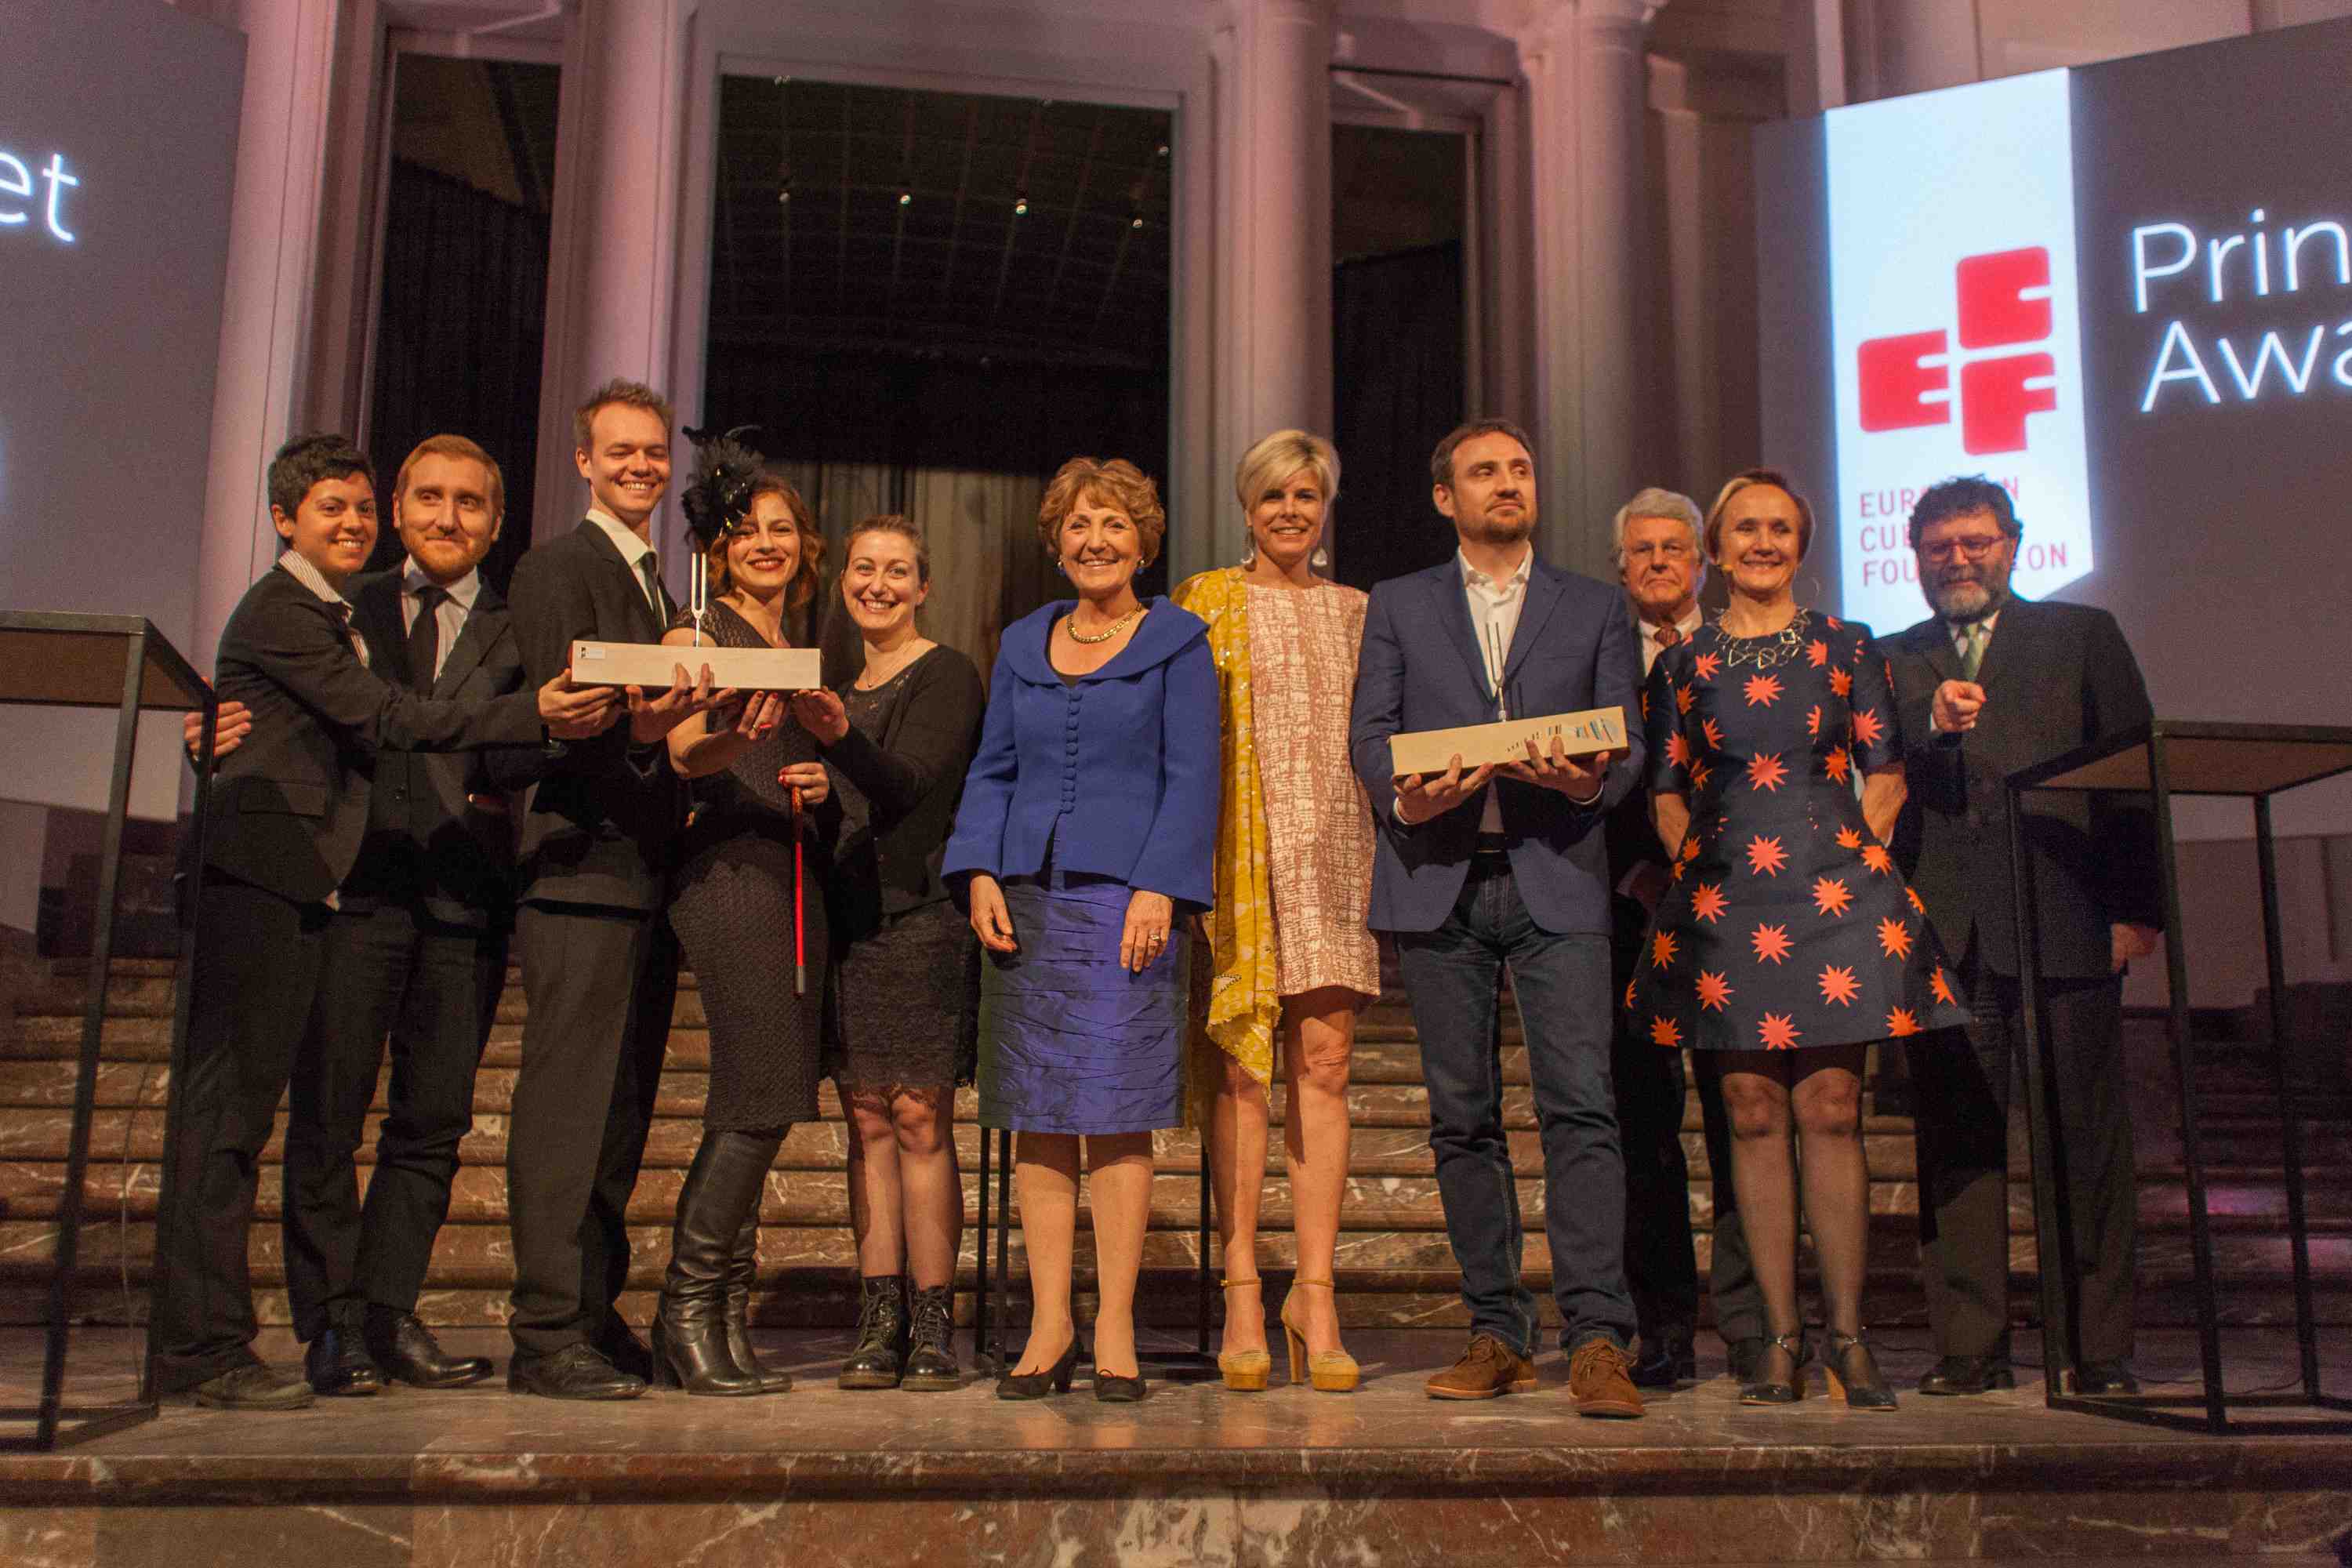 Teatro Valle Occupato: premiato dalla Fondazione Culturale Europea